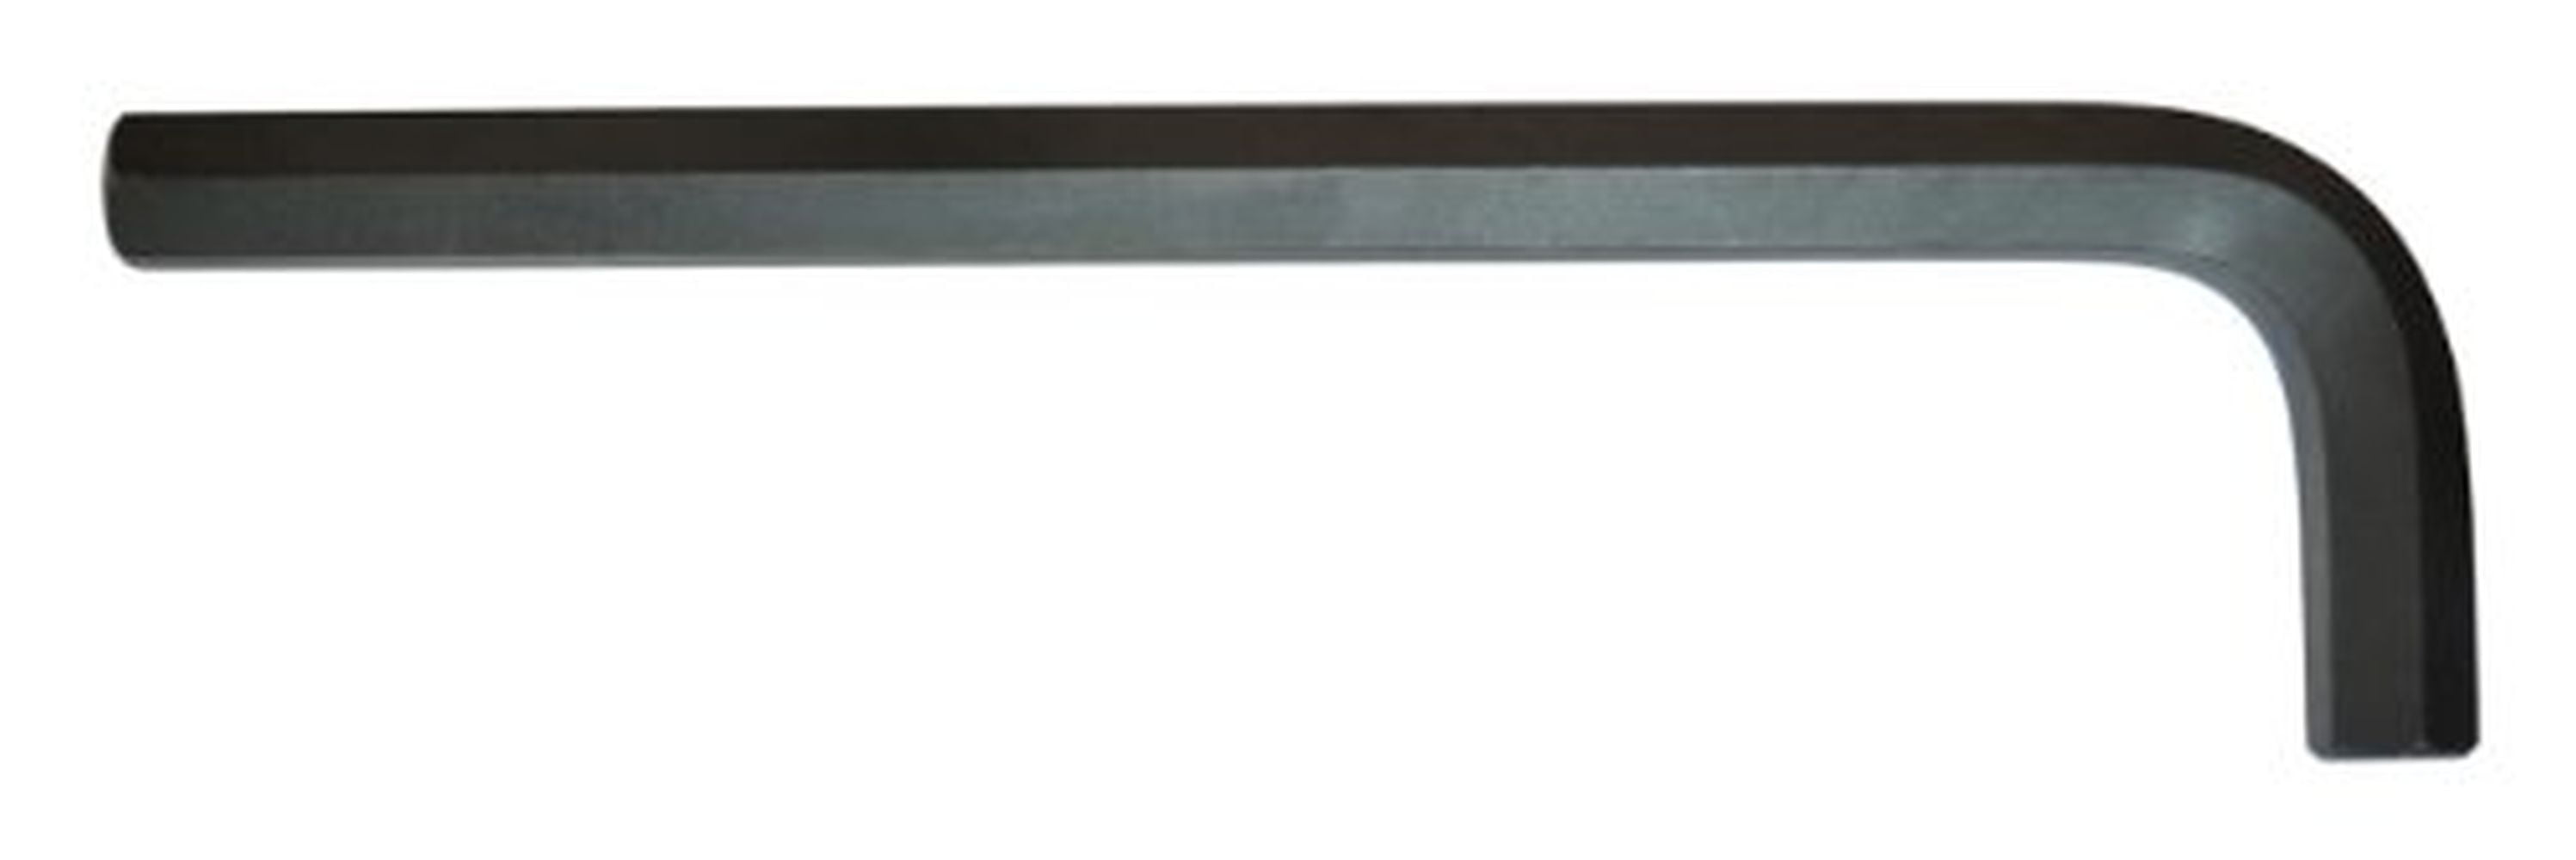 Bondhus 12191 22mm Long Hex L-Wrench 